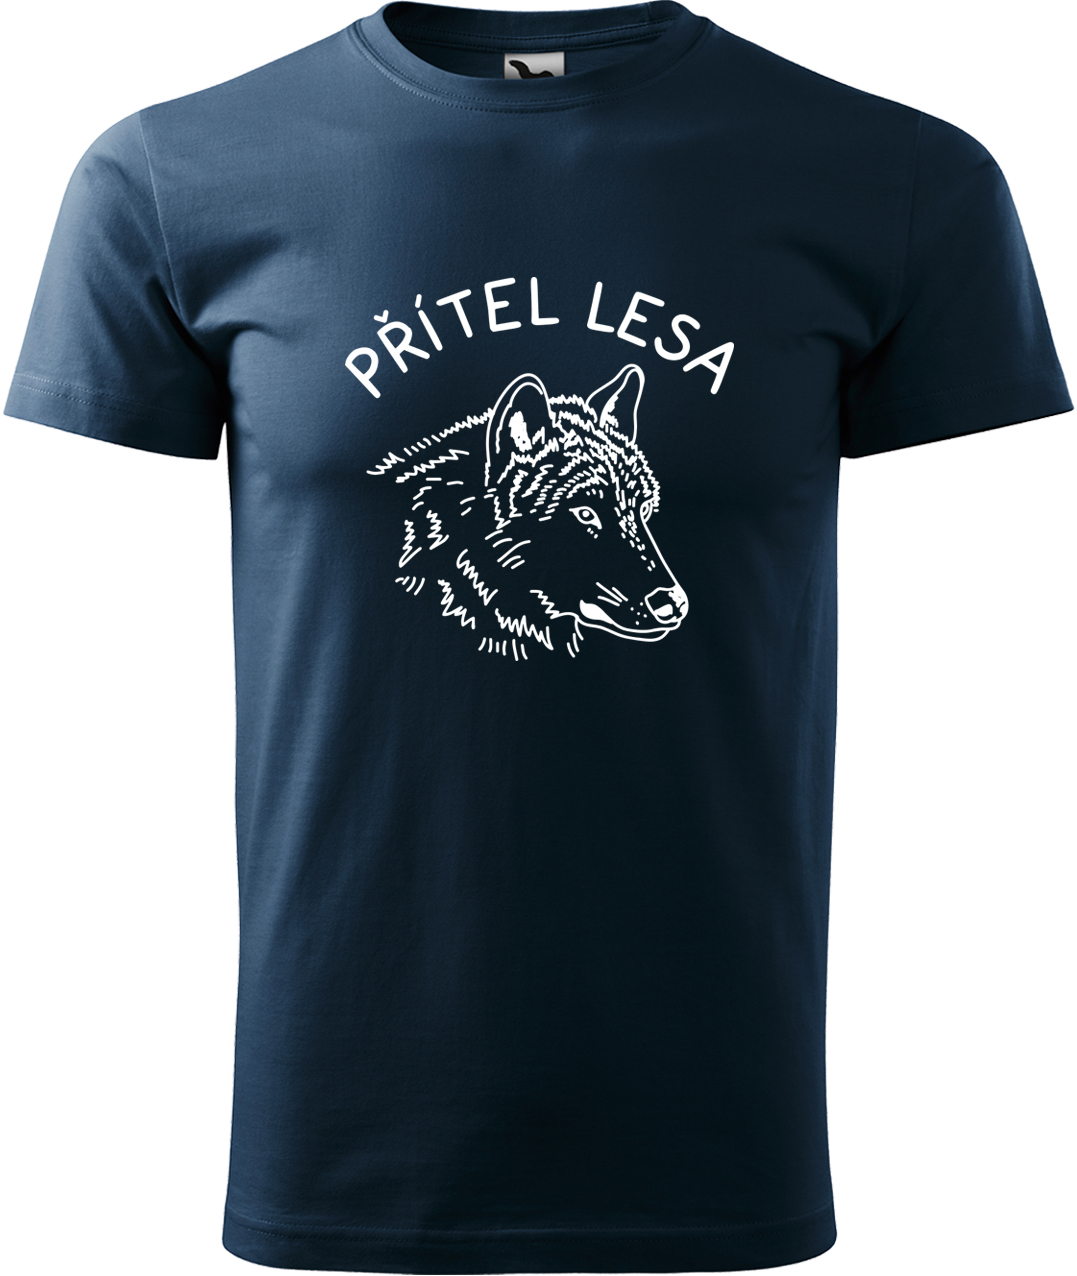 Pánské tričko s vlkem - Přítel lesa Velikost: 3XL, Barva: Námořní modrá (02), Střih: pánský